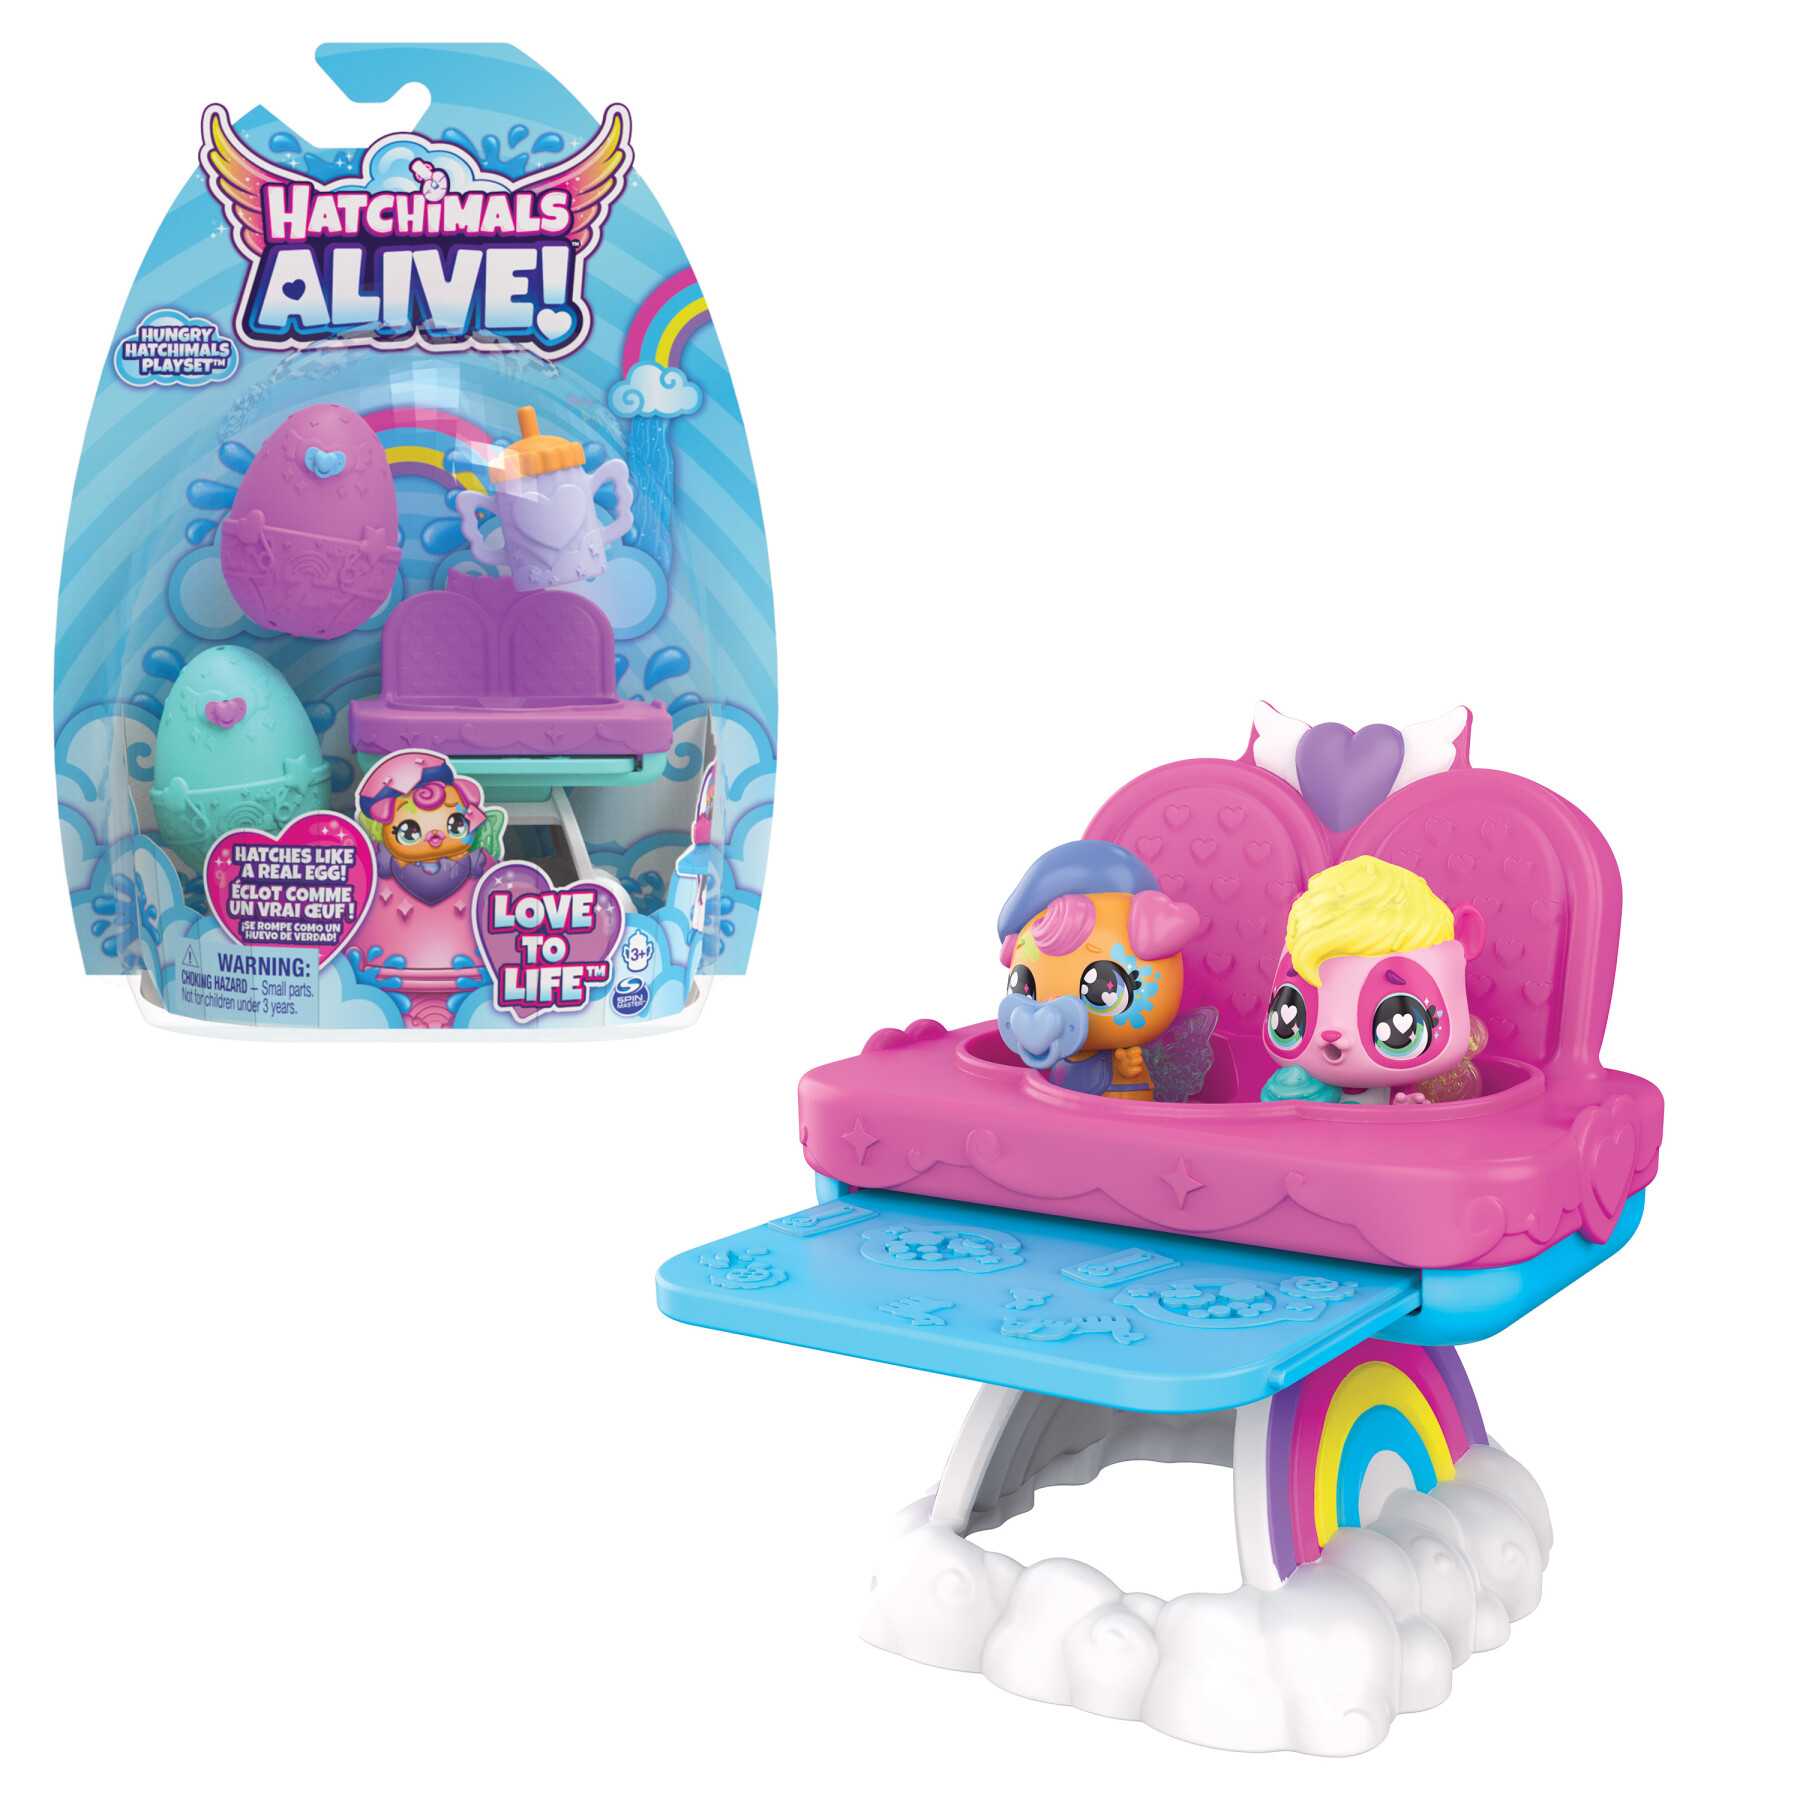 Hatchimals alive, confezione con due uova che si schiudono con l'acqua e  seggiolone, giocattoli per bambine e bambini dai 3 anni in su - Toys Center